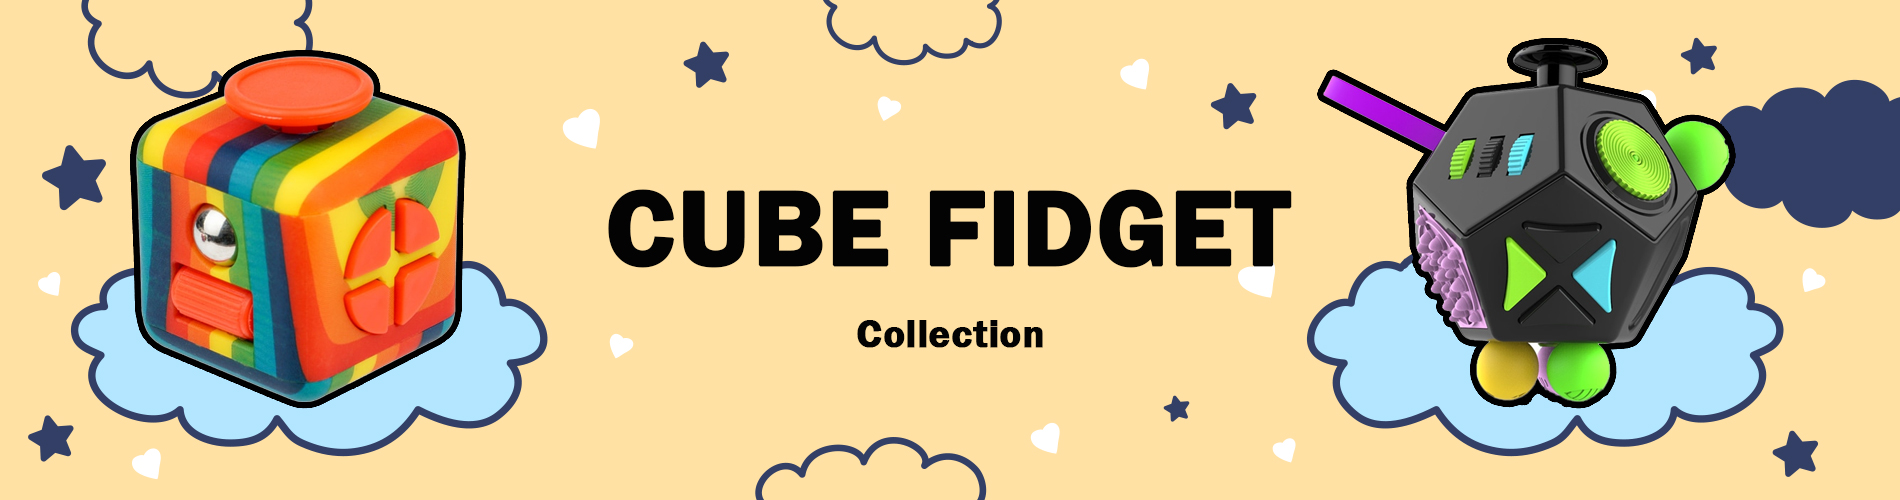 cube fidget - Popping Fidgets